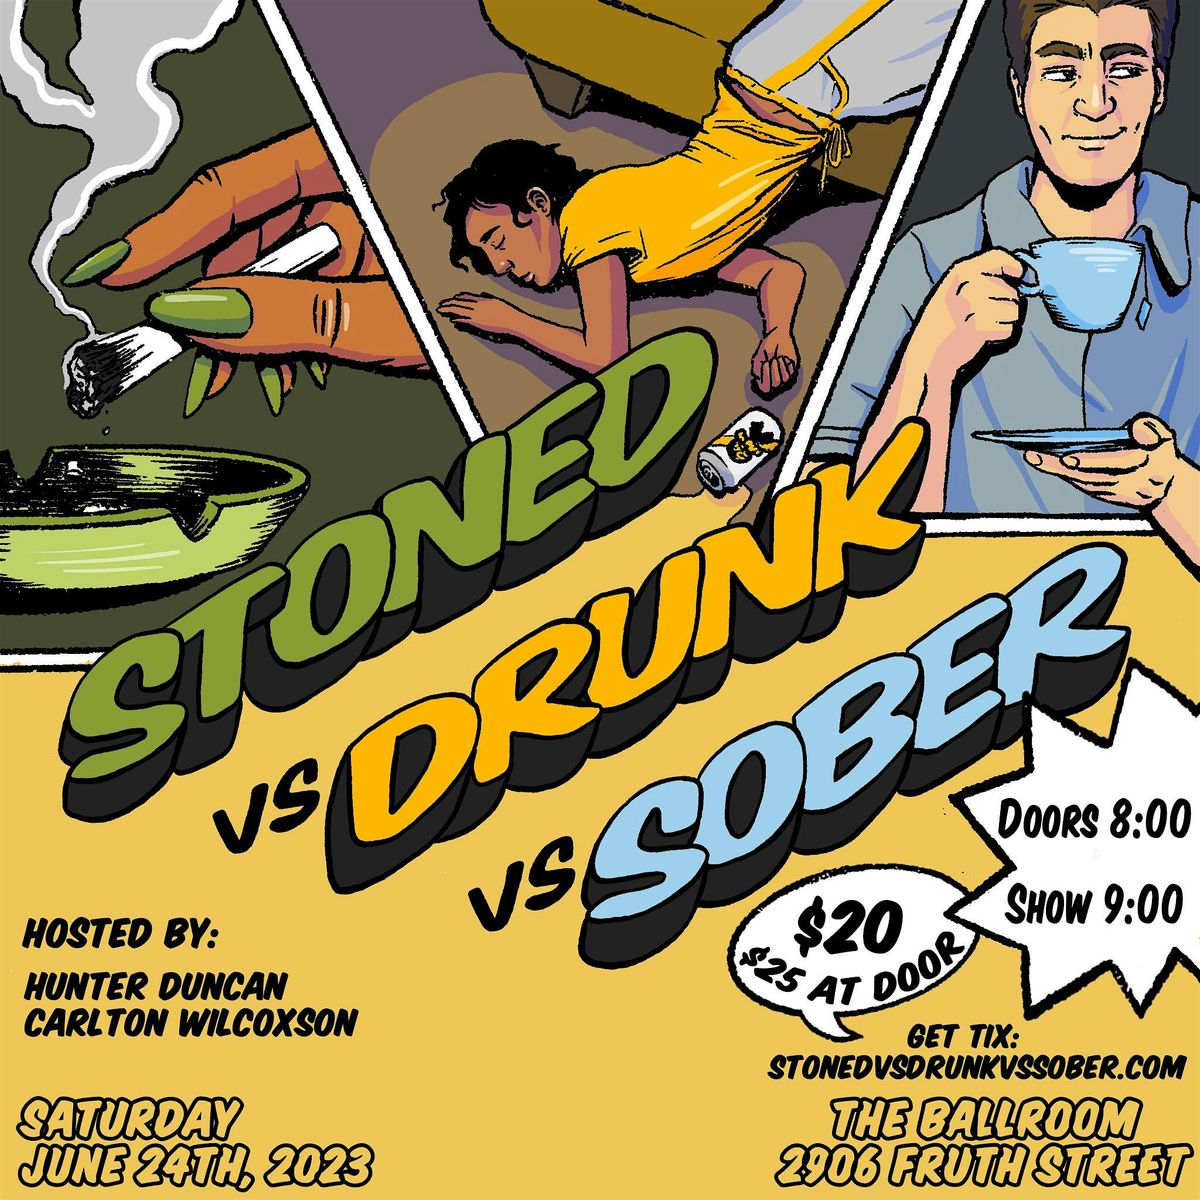 Stoned vs Drunk vs Sober: WILD JULY!